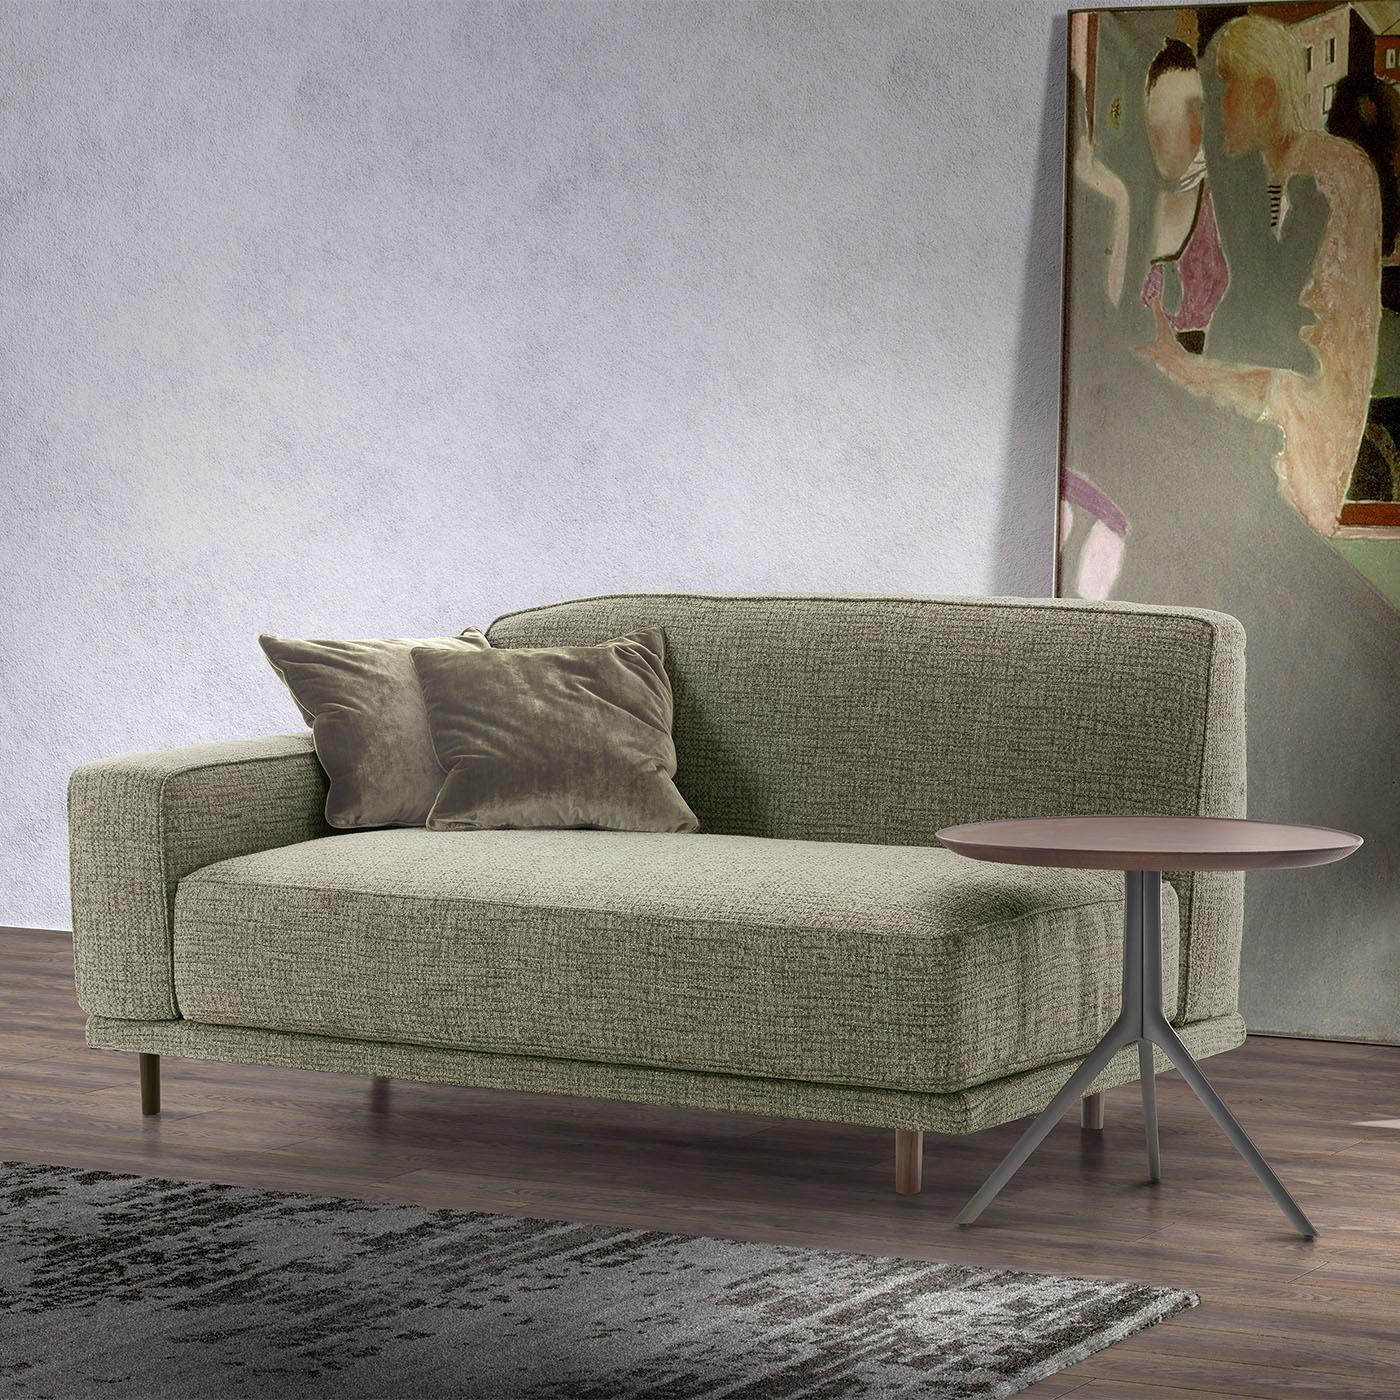 Conçu par Marco Corti, ce canapé est doté d'une structure en bois complétée par des détails en noyer canaletto massif, qui ajoutent une touche de sophistication à son design épuré. Les coussins, les accoudoirs et les dossiers sont rembourrés et